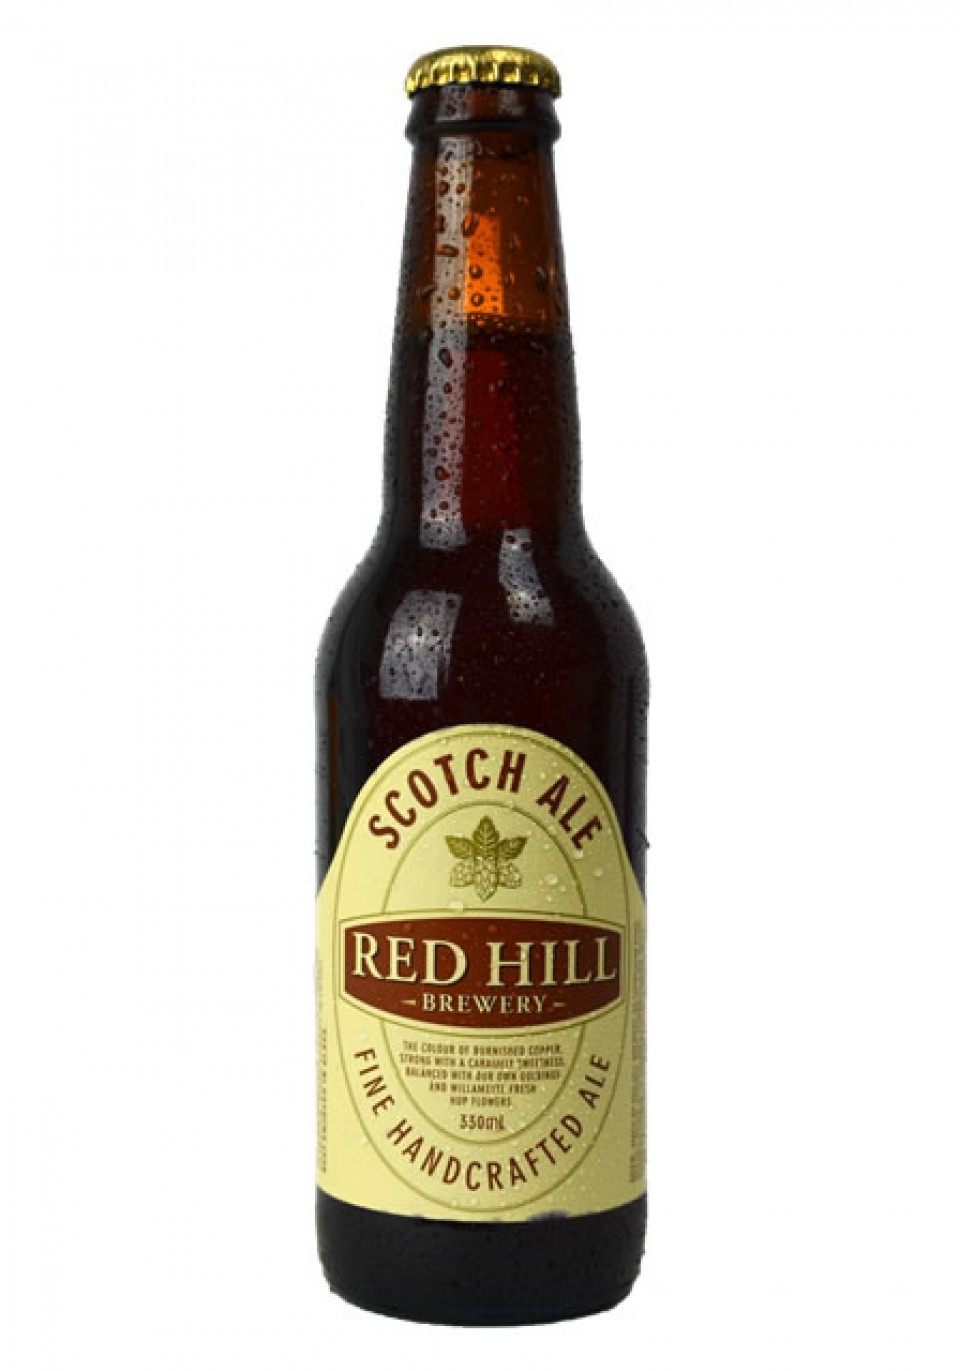 Scotch Ale red hill